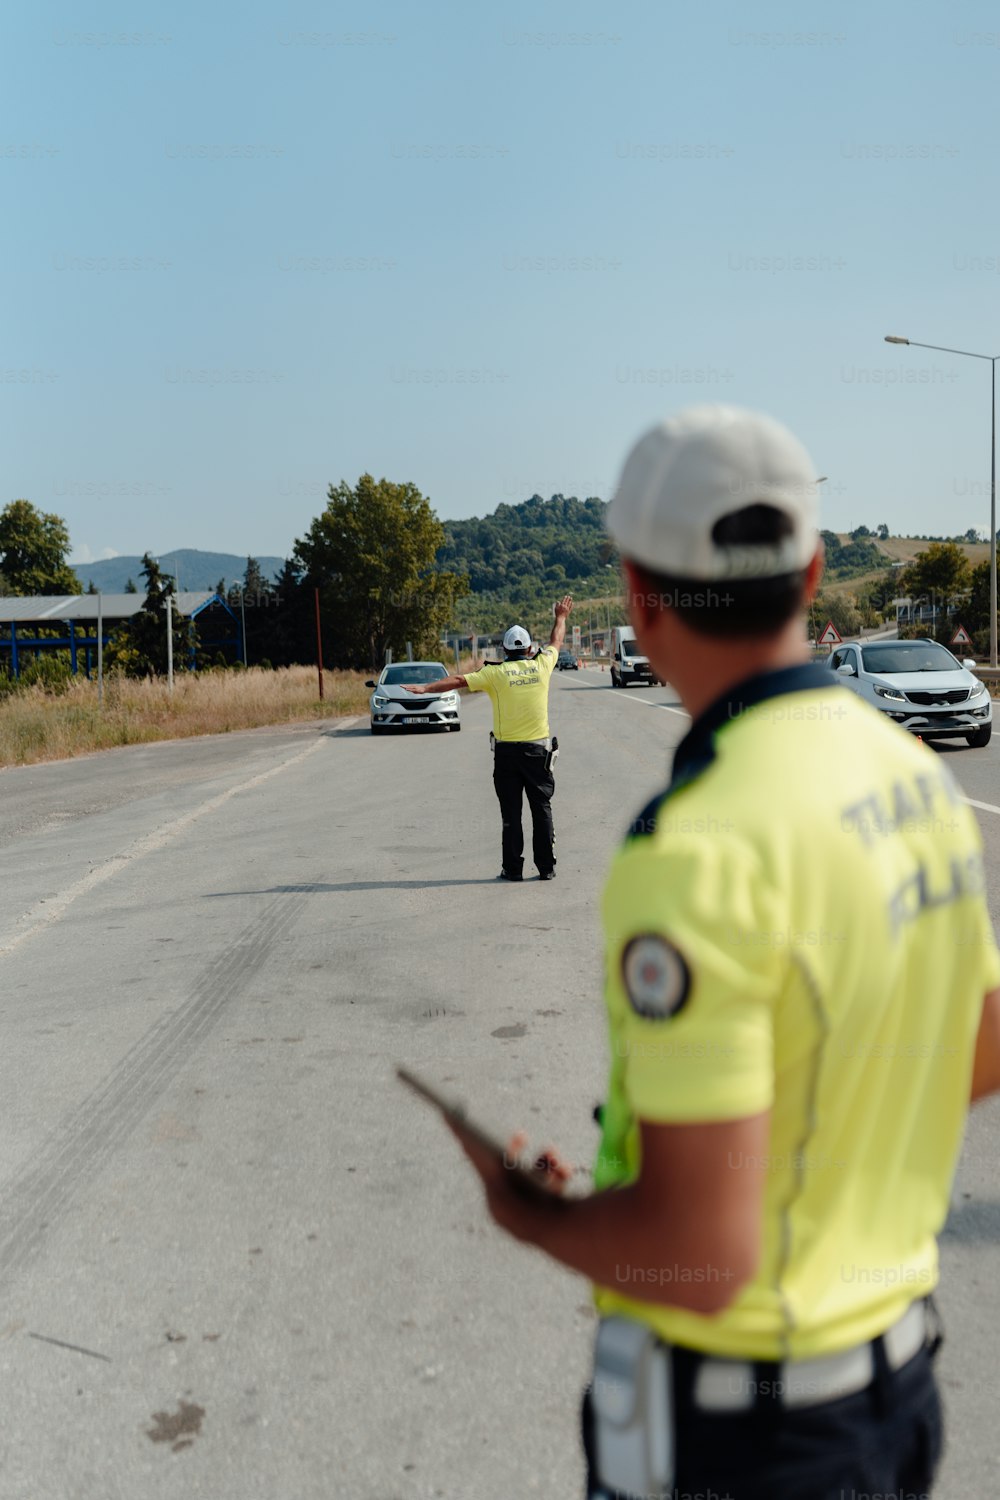 Un oficial de policía dirigiendo el tráfico en una carretera